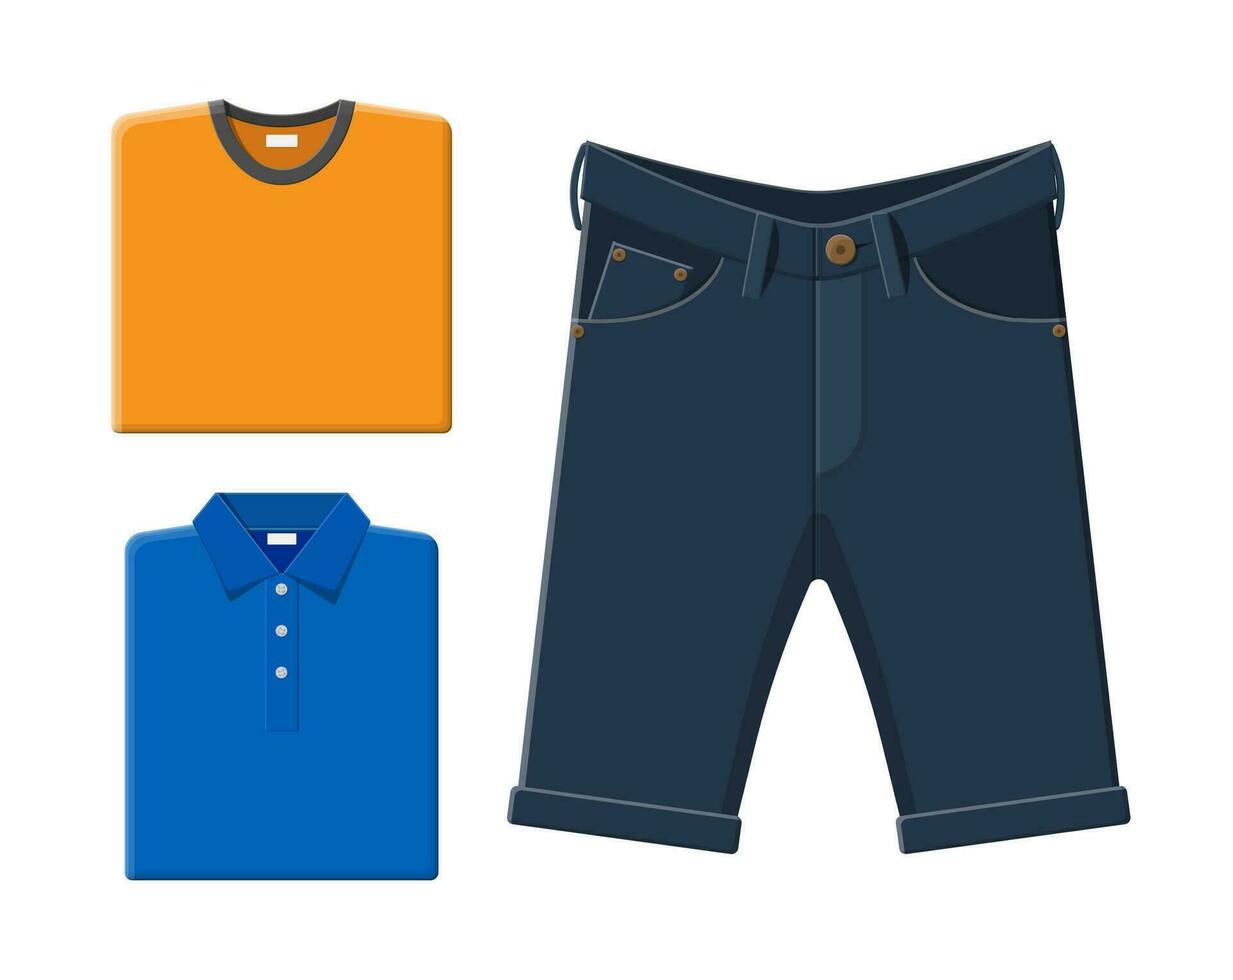 blå skjorta, orange t-shirt, jeans shorts. män sommar kläder. vektor illustration i platt stil